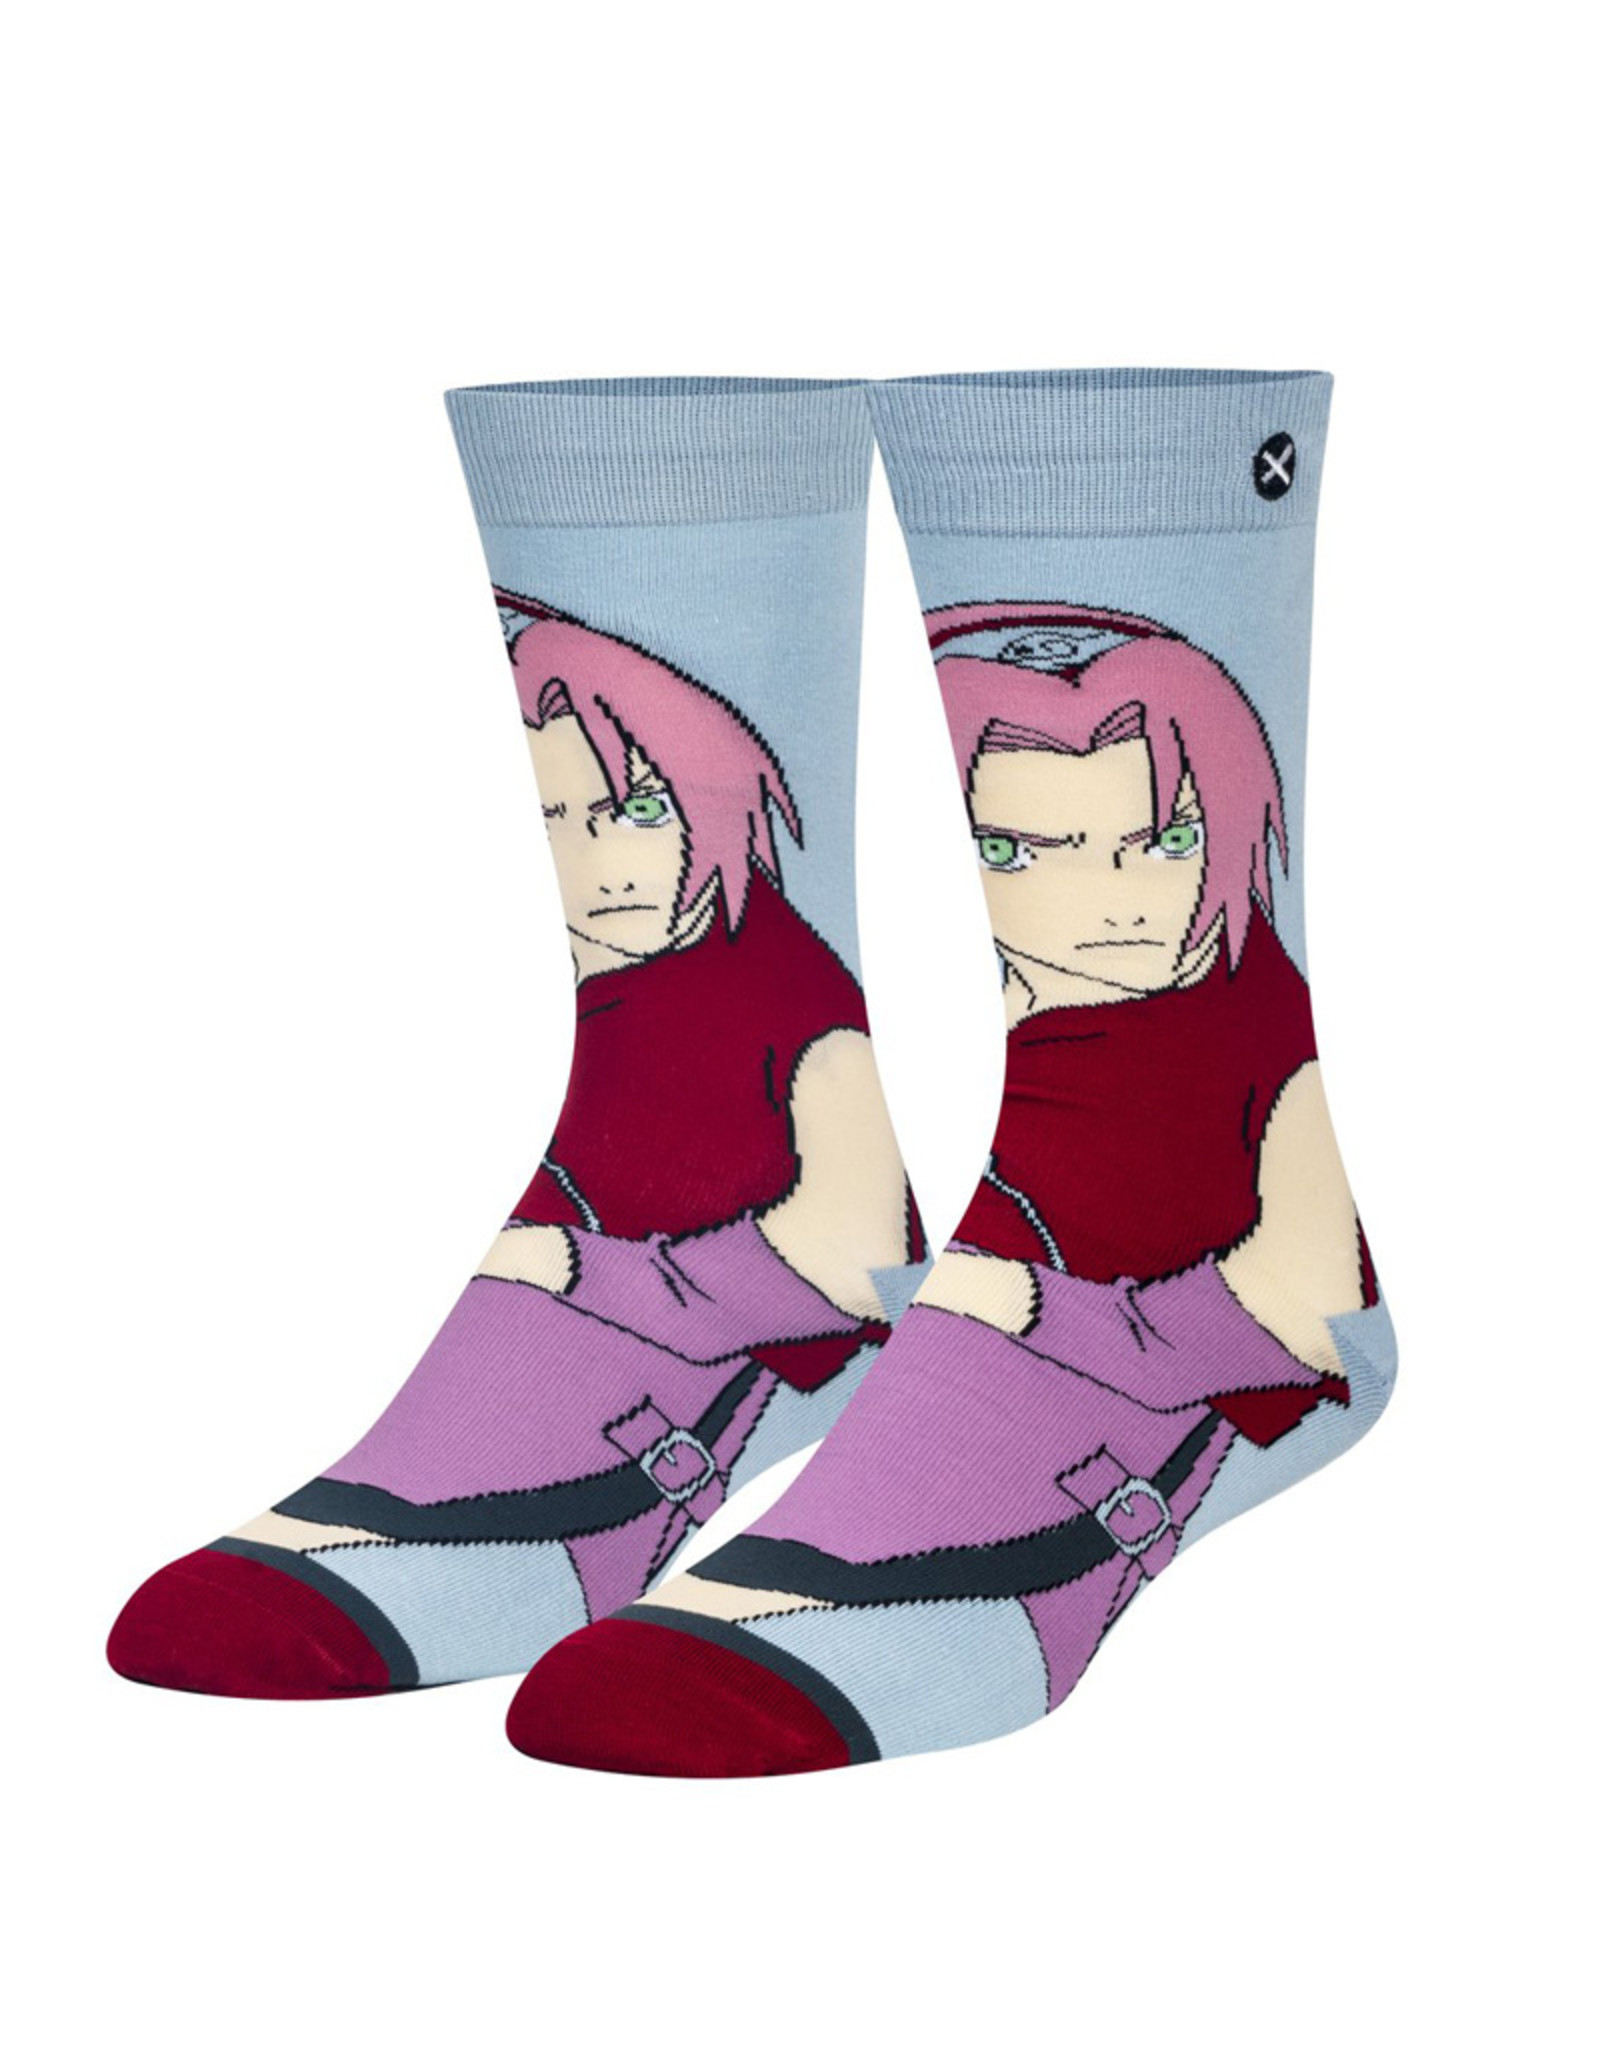 Odd Sox Odd Sox: Sakura Socks